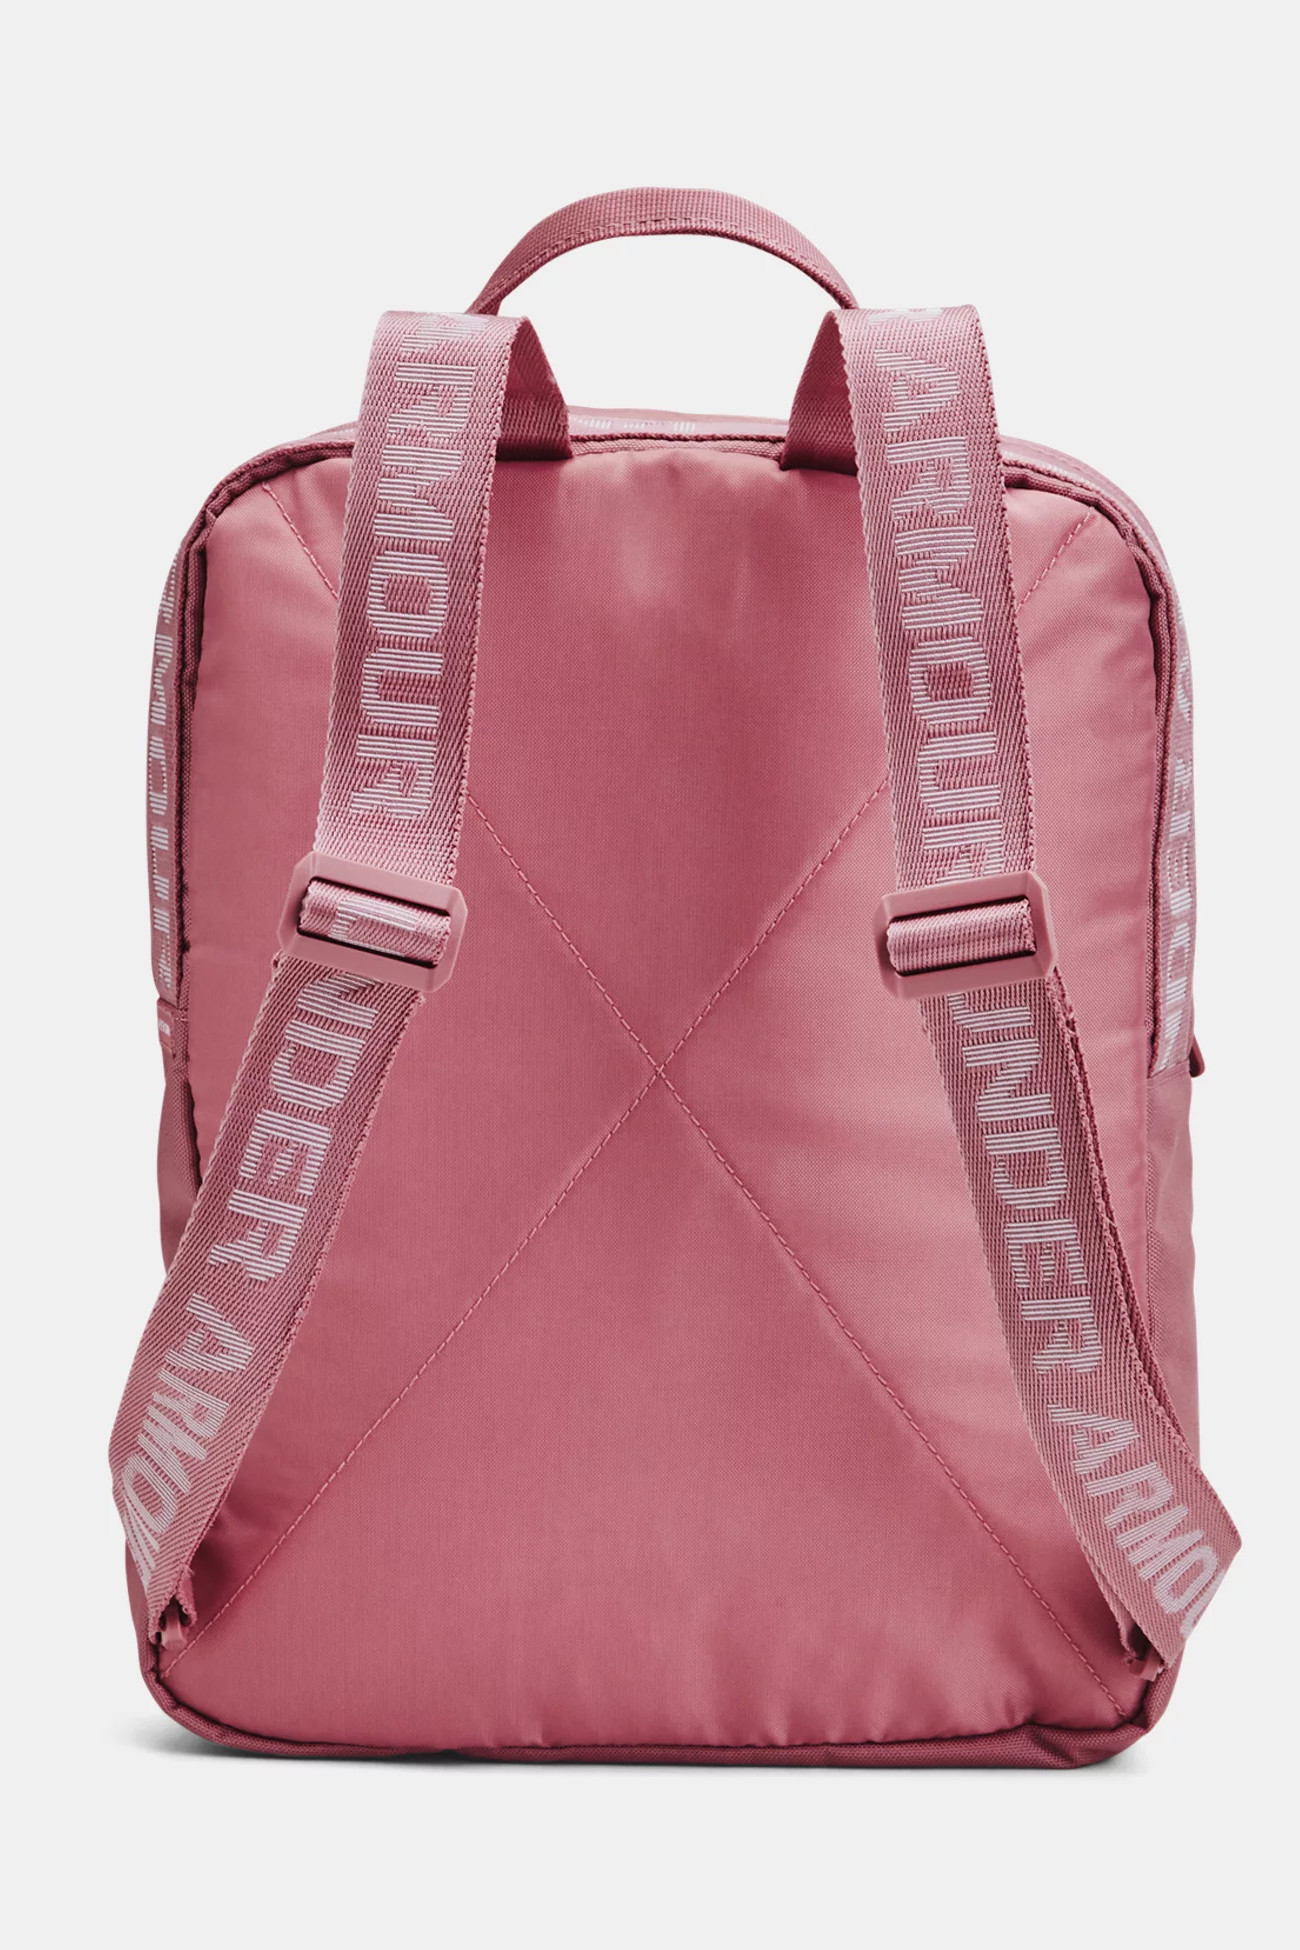 Рюкзак  Under Armour UA Loudon Backpack SM рожевий 1376456-697 изображение 3